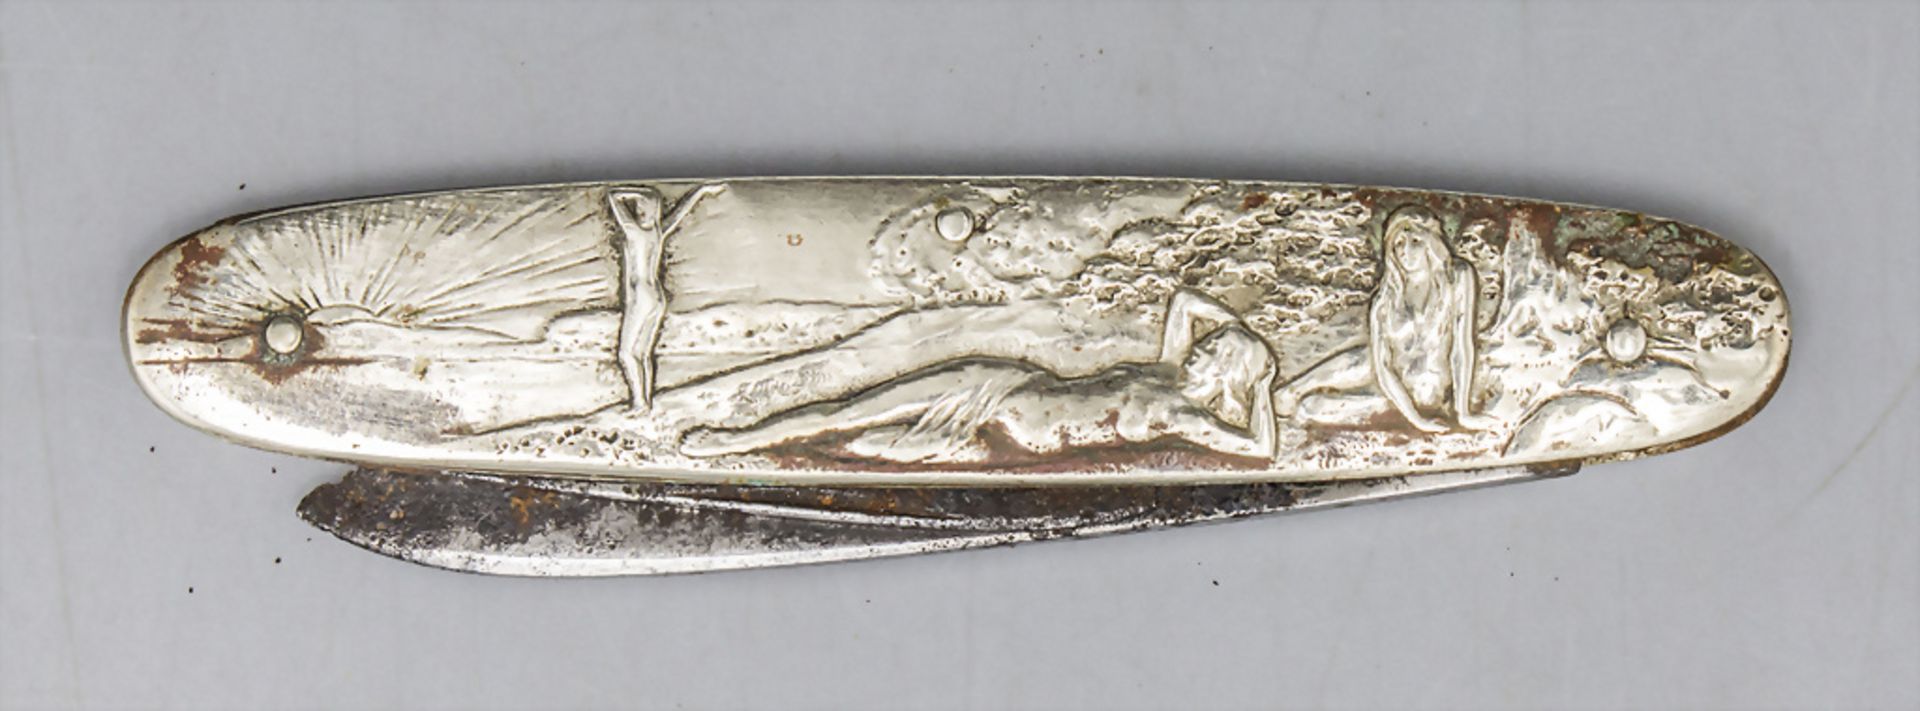 Jugendstil Taschenmesser mit weiblichem Halbakt / An Art Nouveau pocket knife with a female ... - Bild 2 aus 3